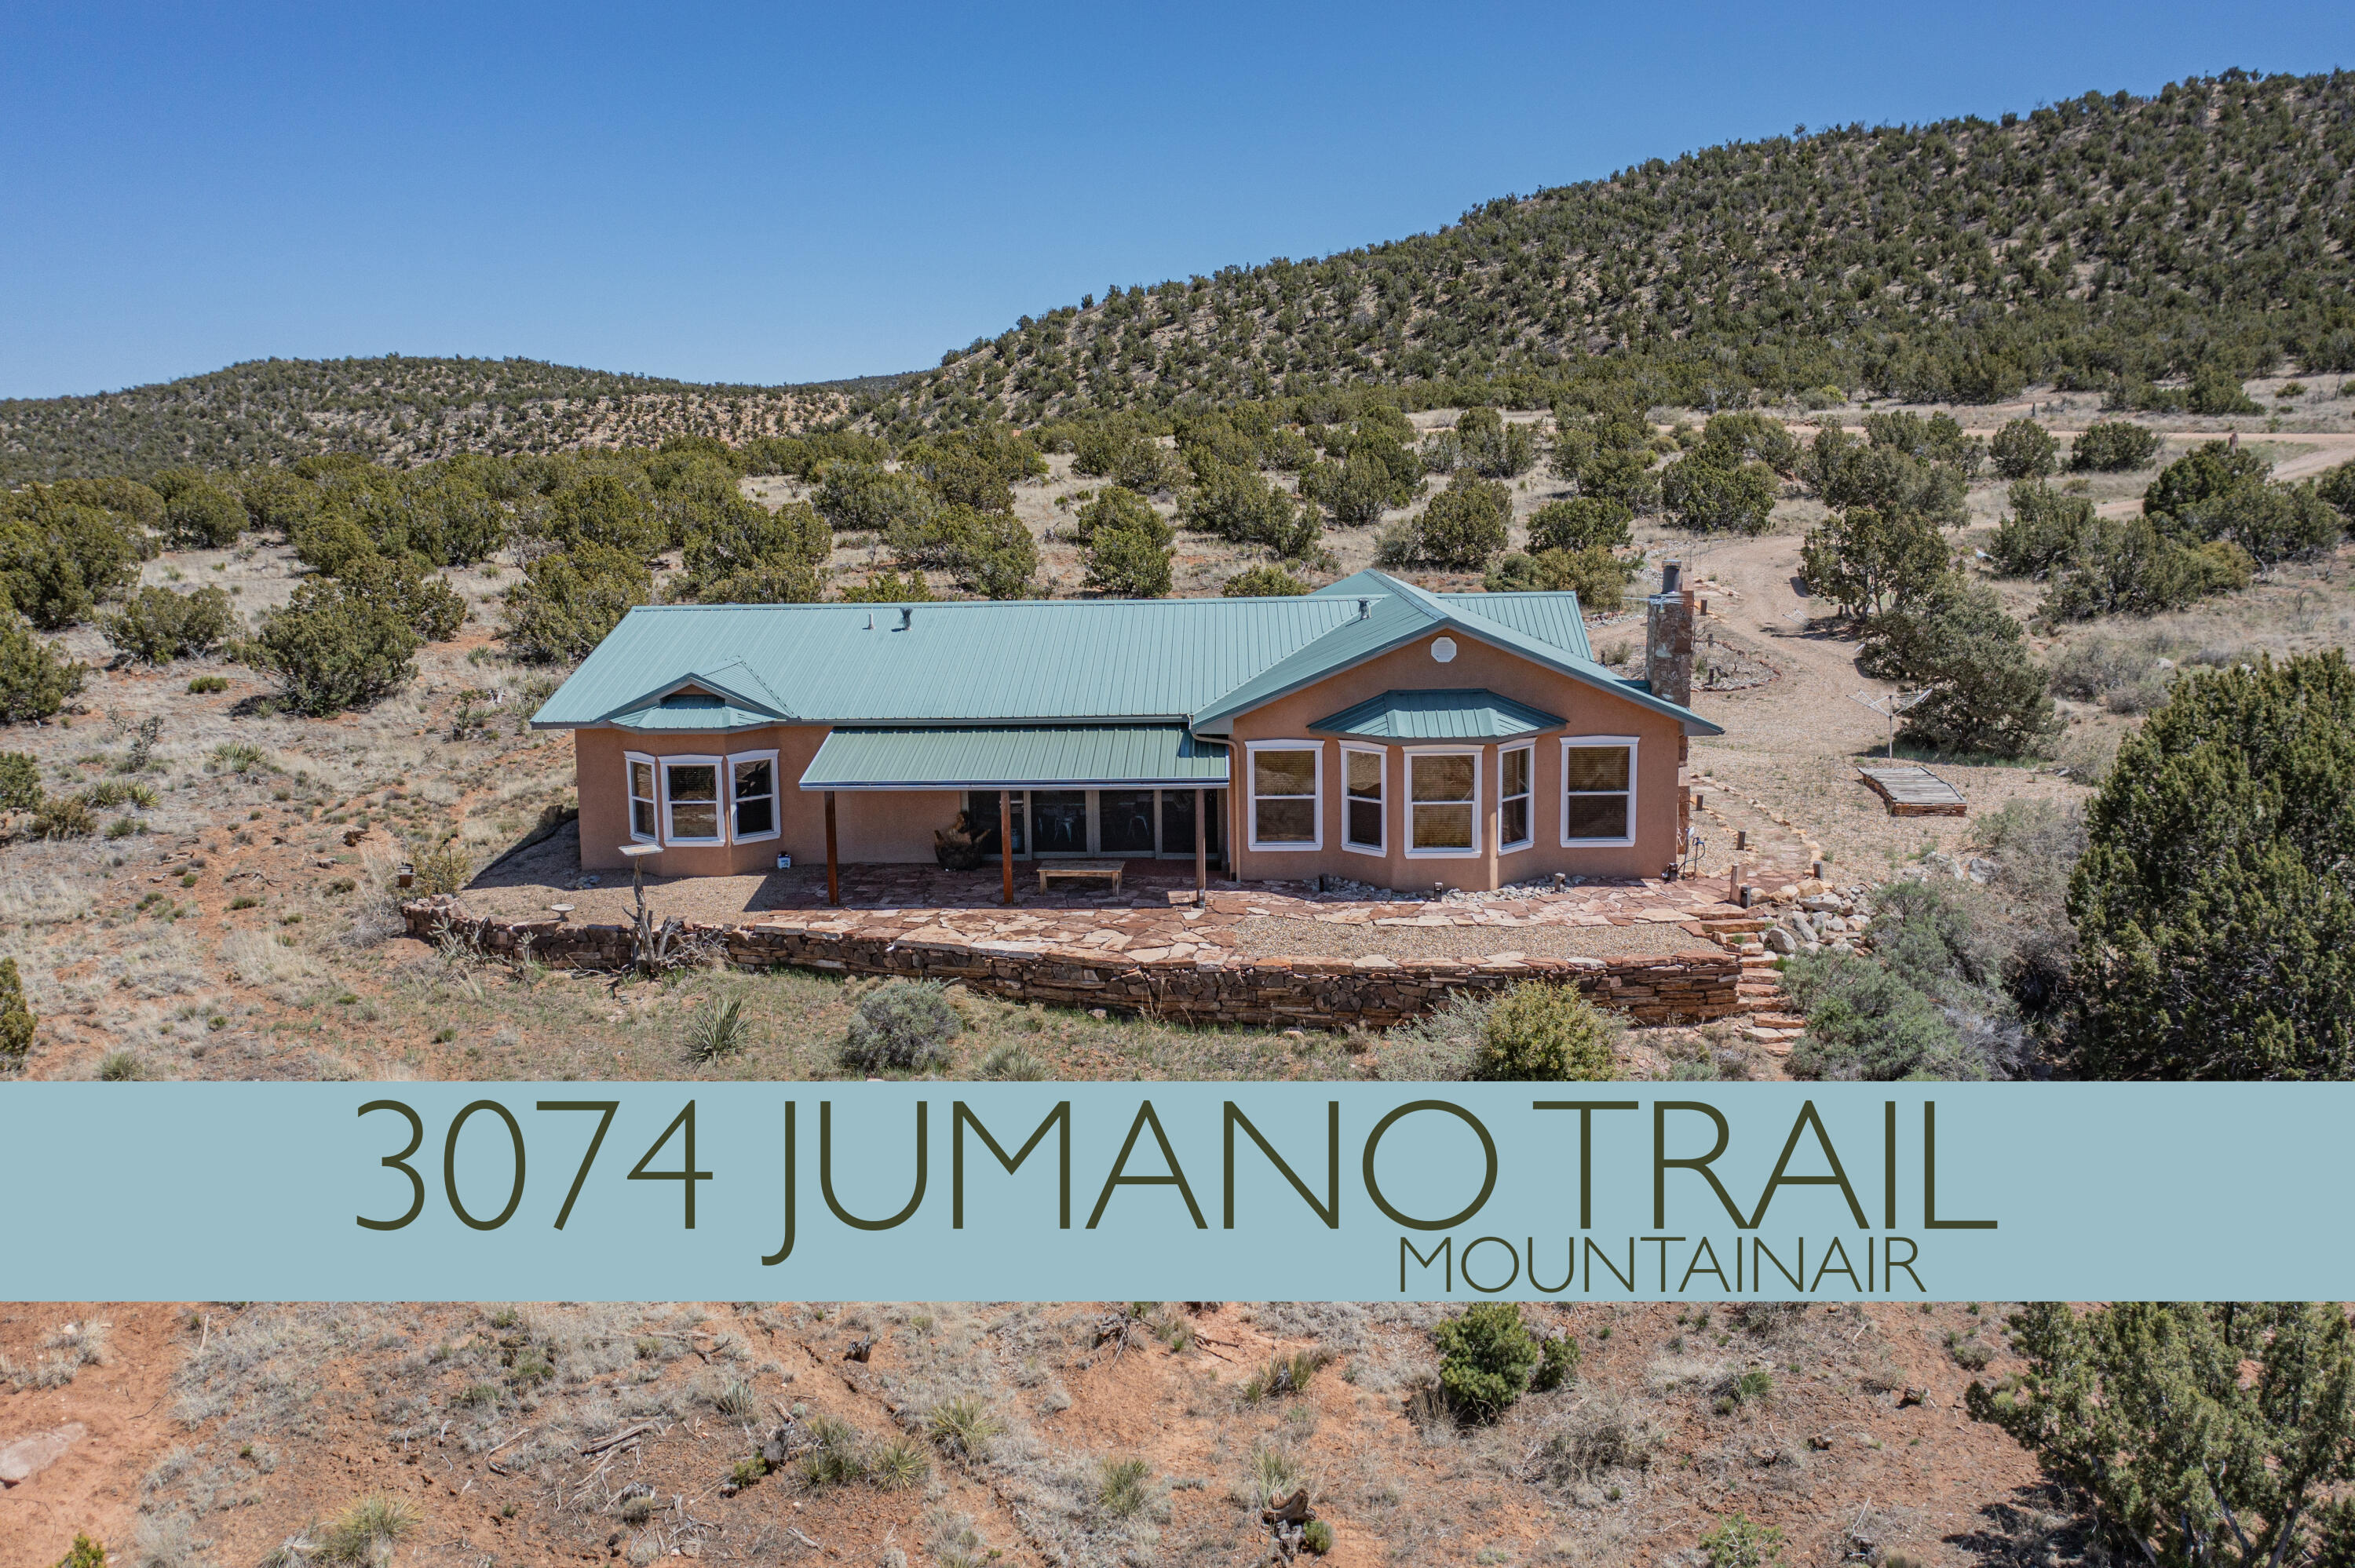 3074 Jumano Trail, Mountainair, NM 87036